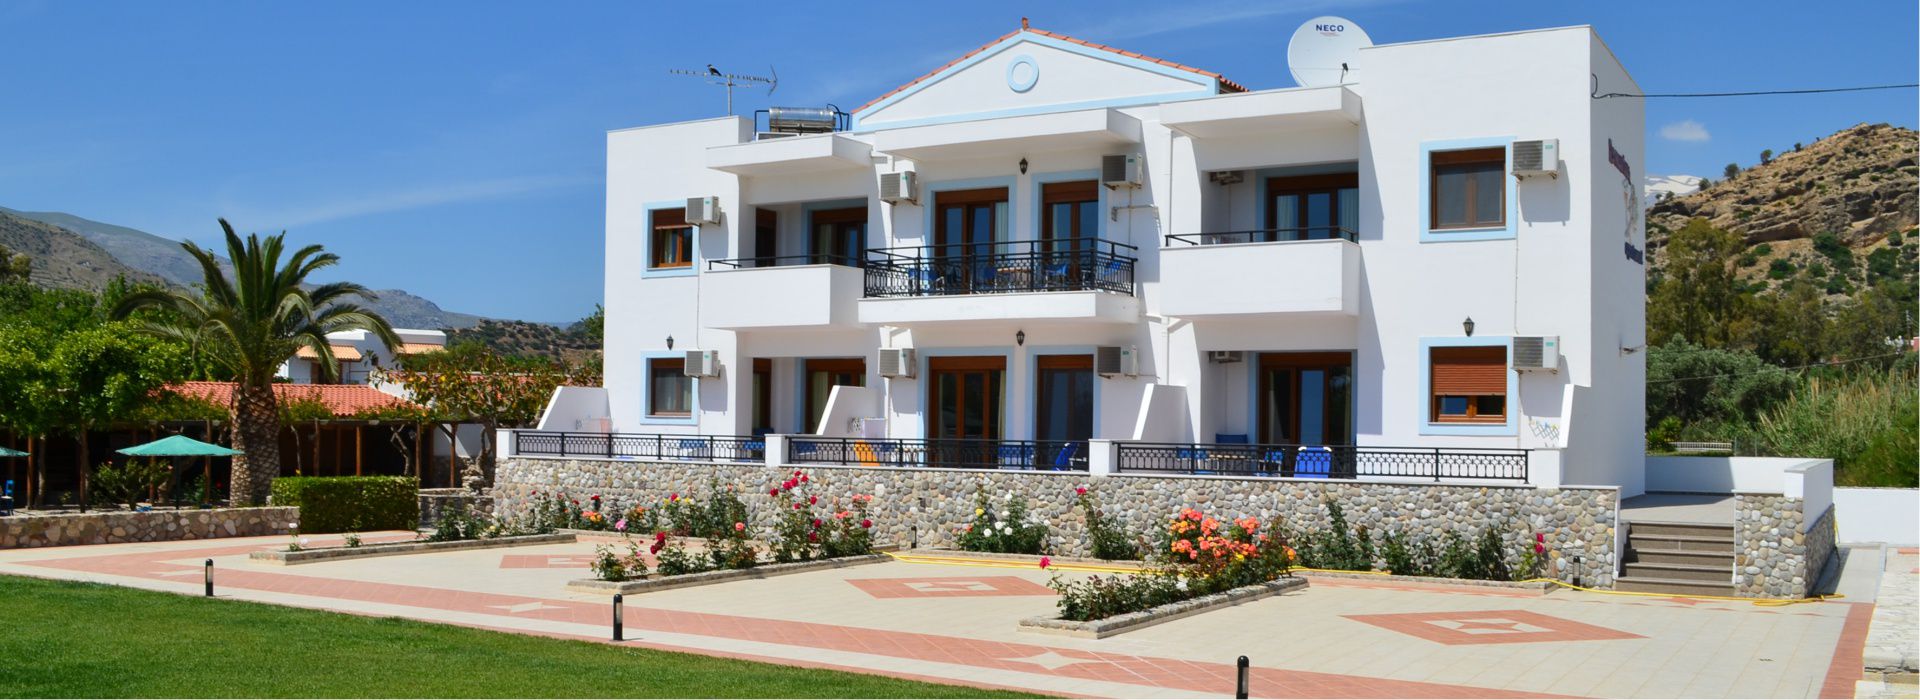 Slechts op enkele meters afstand van het strand van Agia Galini vind u onze gerenoveerde kamers.